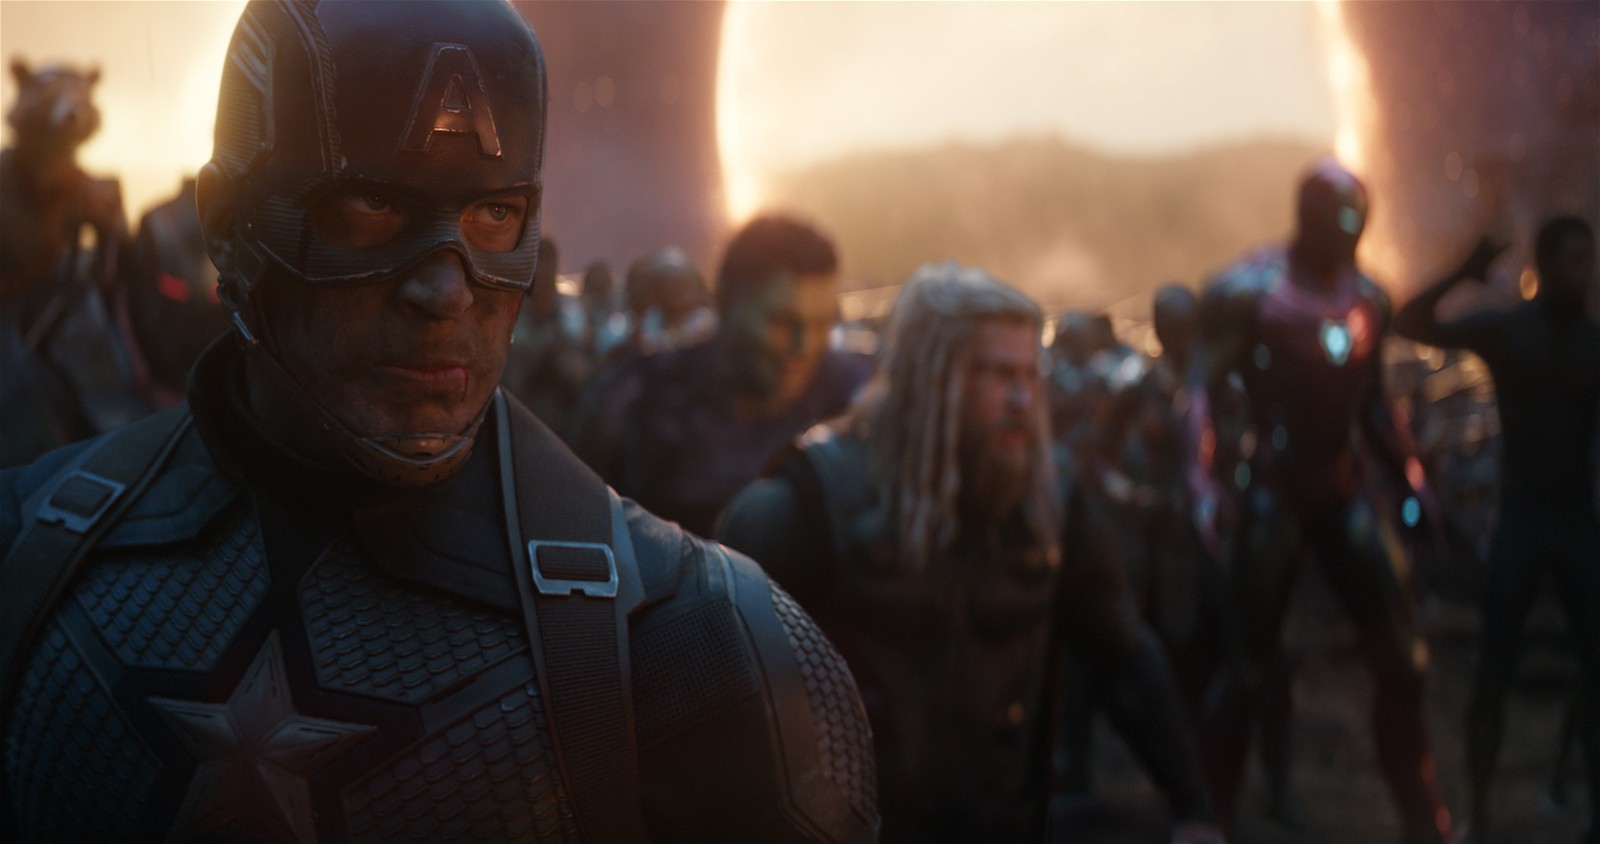 The Avengers assemble in Marvel's Avengers: Endgame